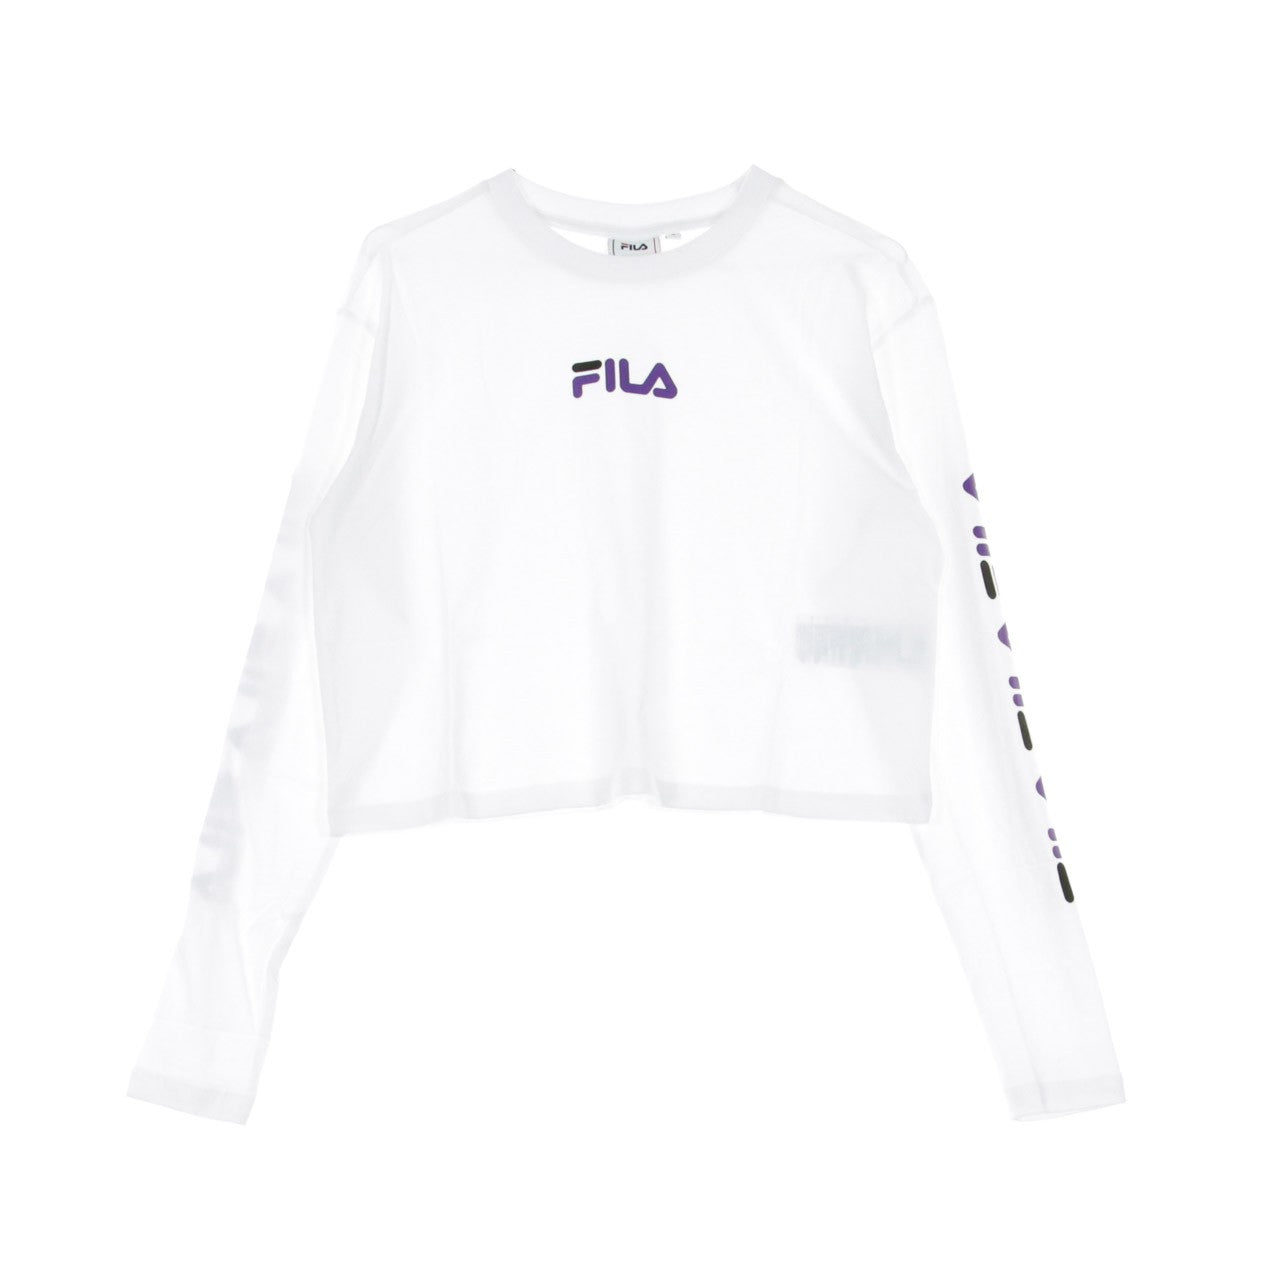 Reva Women's Cropped T-Shirt L/s Bright White